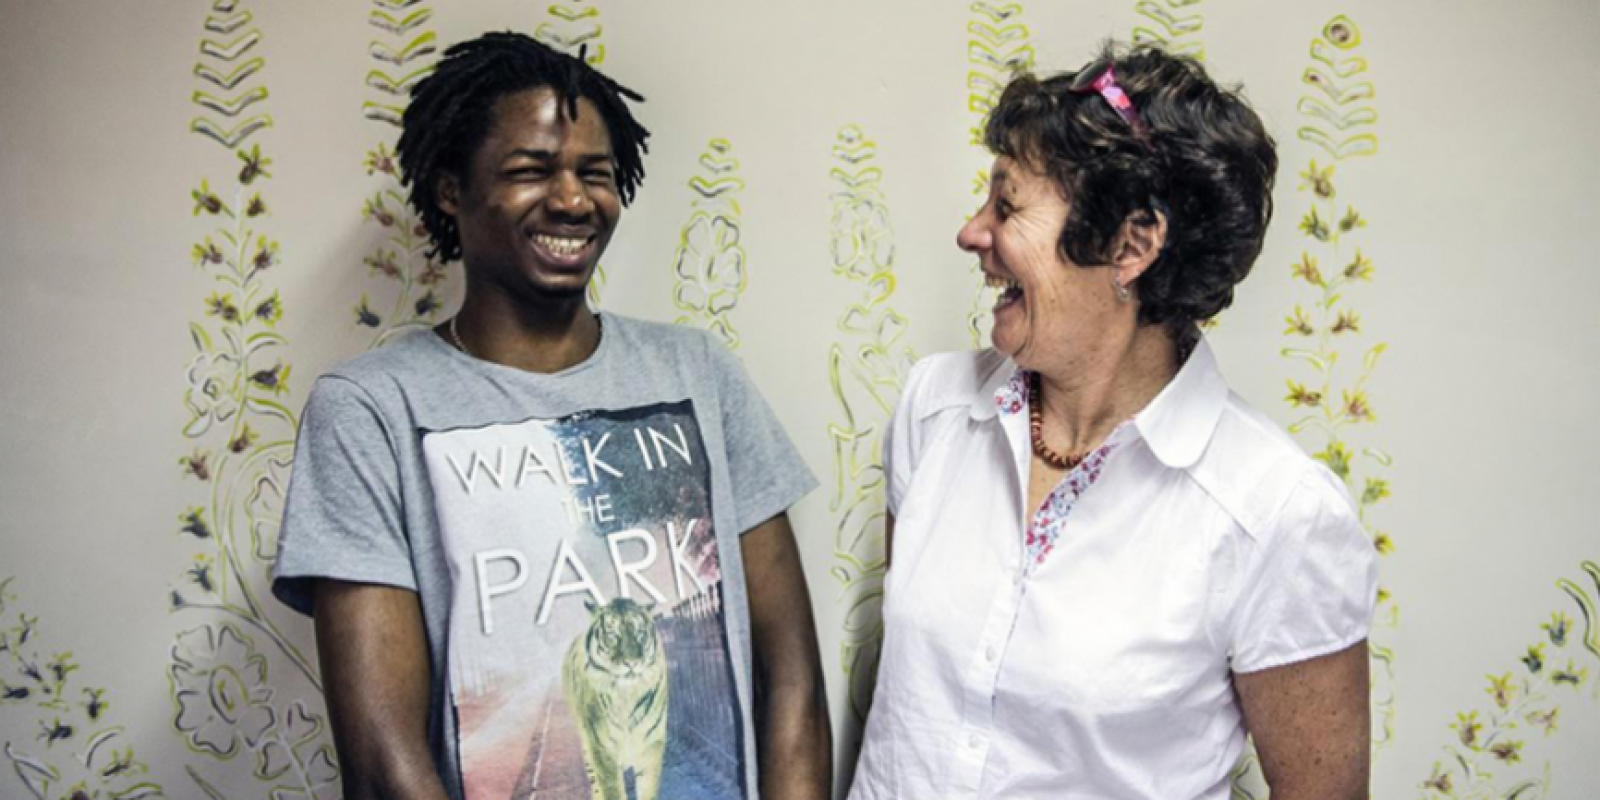 « Duo pour un travail » fournit des mentors qui aident les migrants et réfugiés à acquérir des compétences professionnelles et trouver du travail en Belgique (JRS)